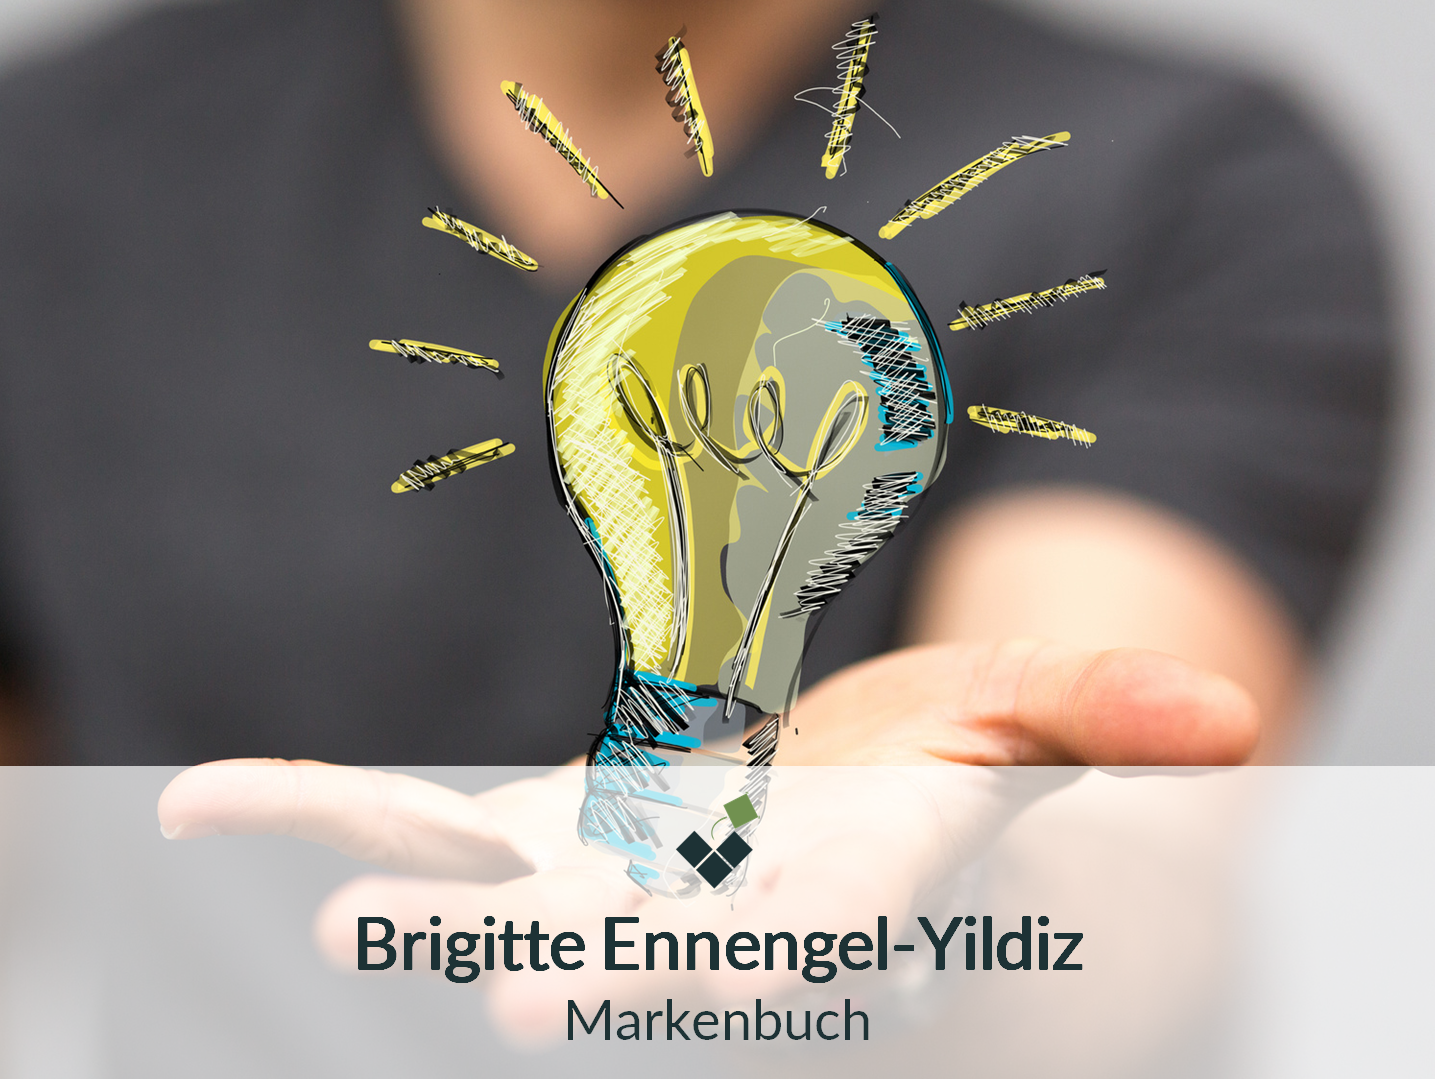 Das Personal Branding Konzept von Brigitte Ennengel-Yildiz